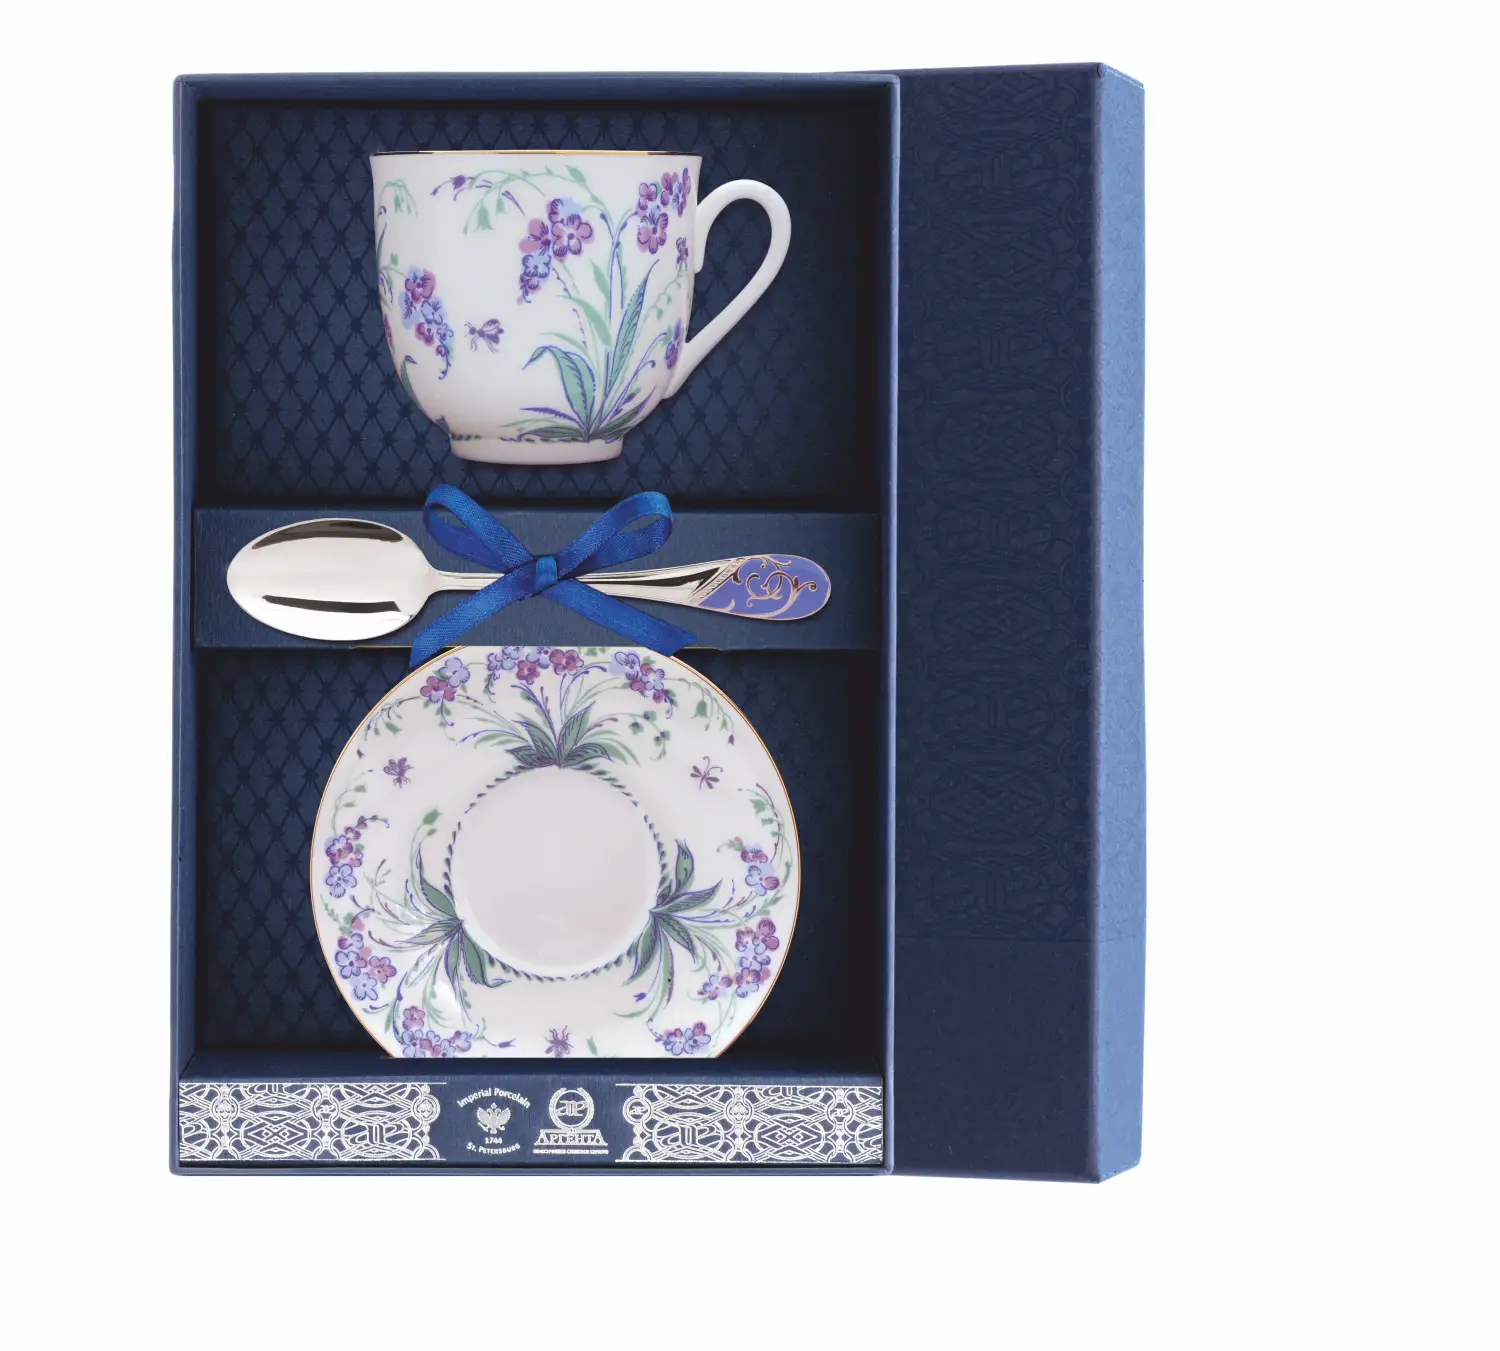 Набор чайный Ландыш - Незабудки 3 пр.: блюдце, ложка, чашка (Серебро 925) набор чайный ландыш фигурное катание блюдце ложка чашка серебро 925